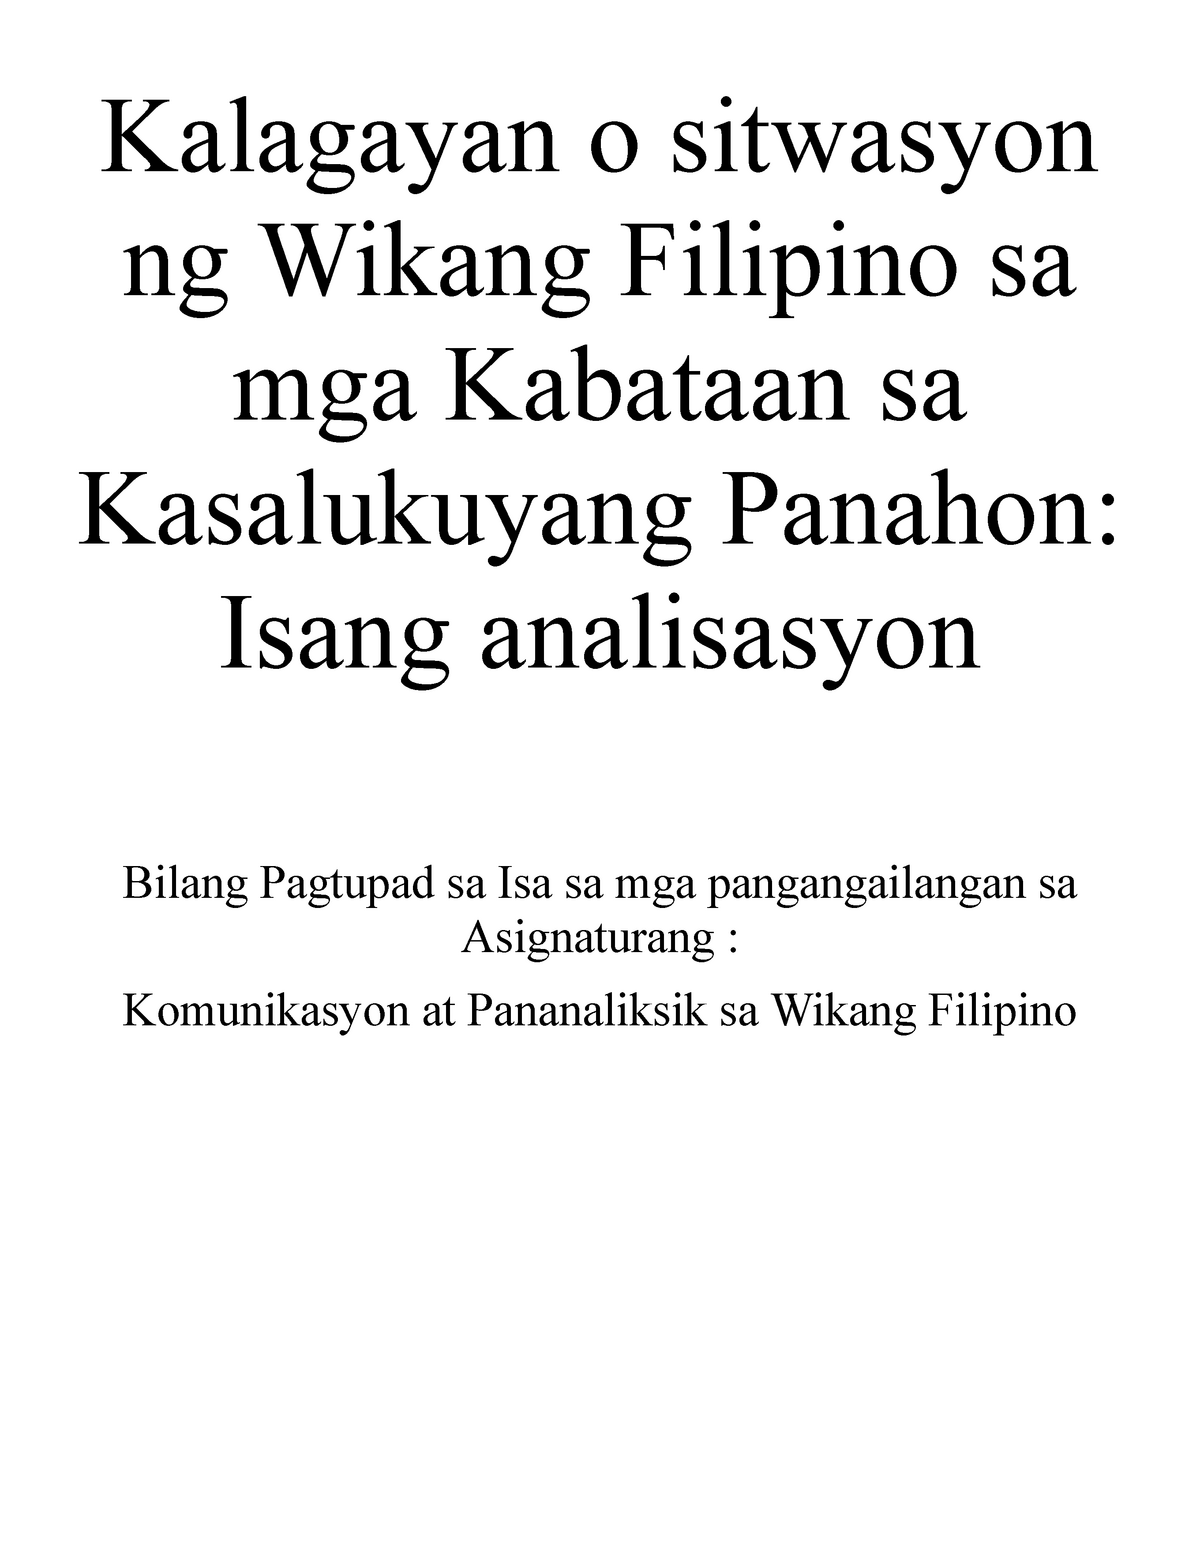 16++ Kalagayan ng wikang filipino sa kasalukuyang panahon poster ideas in 2021